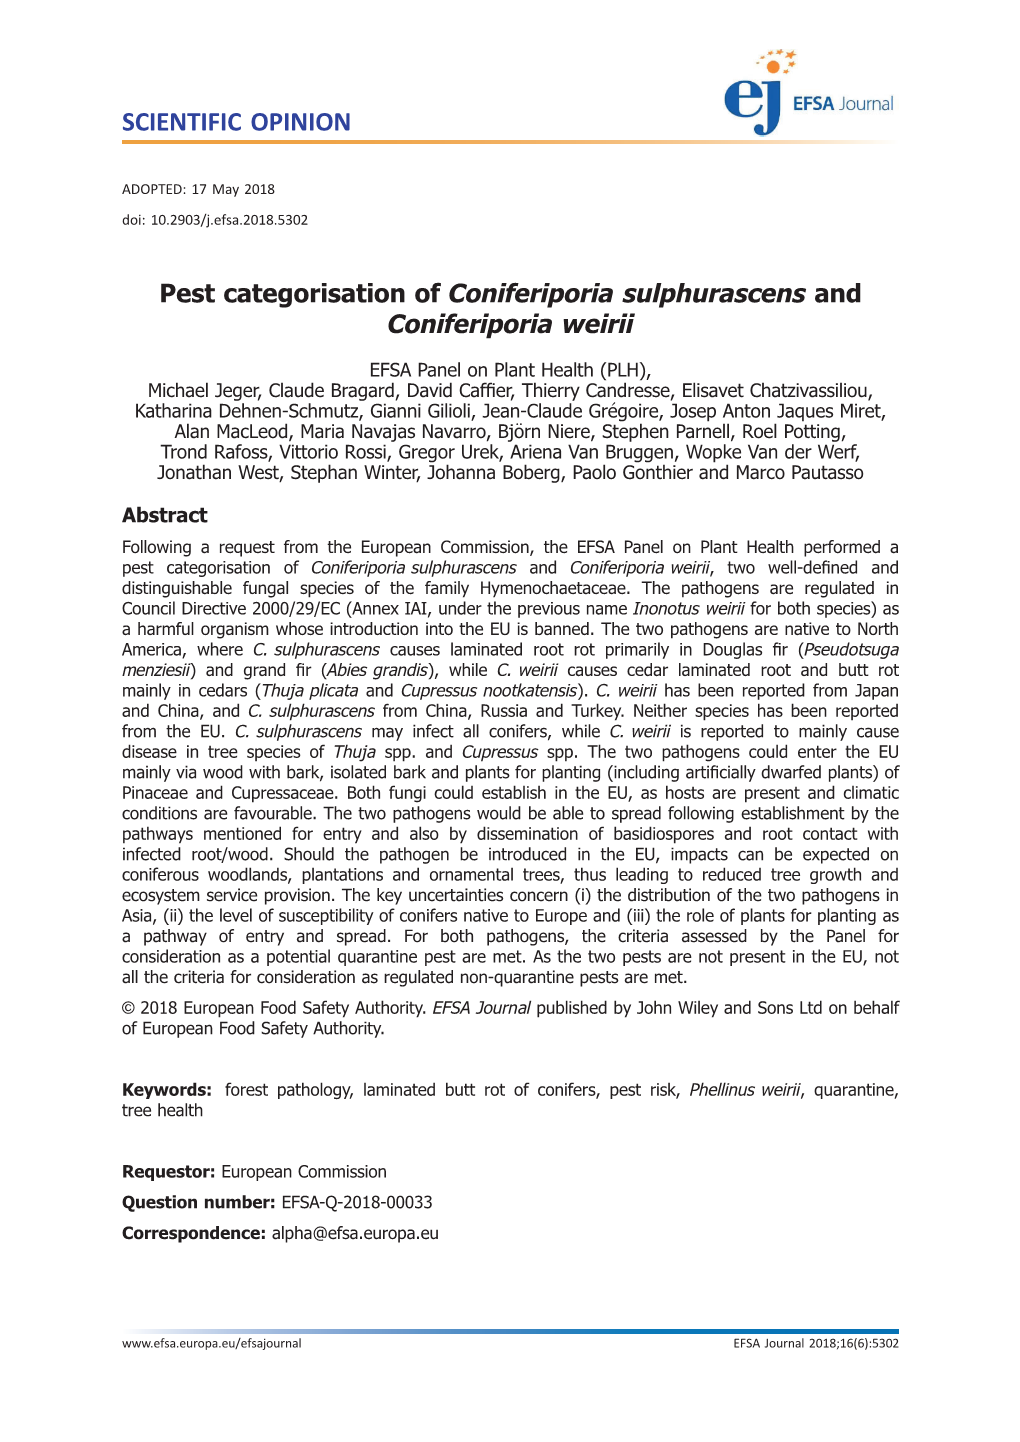 Pest Categorisation of Coniferiporia&